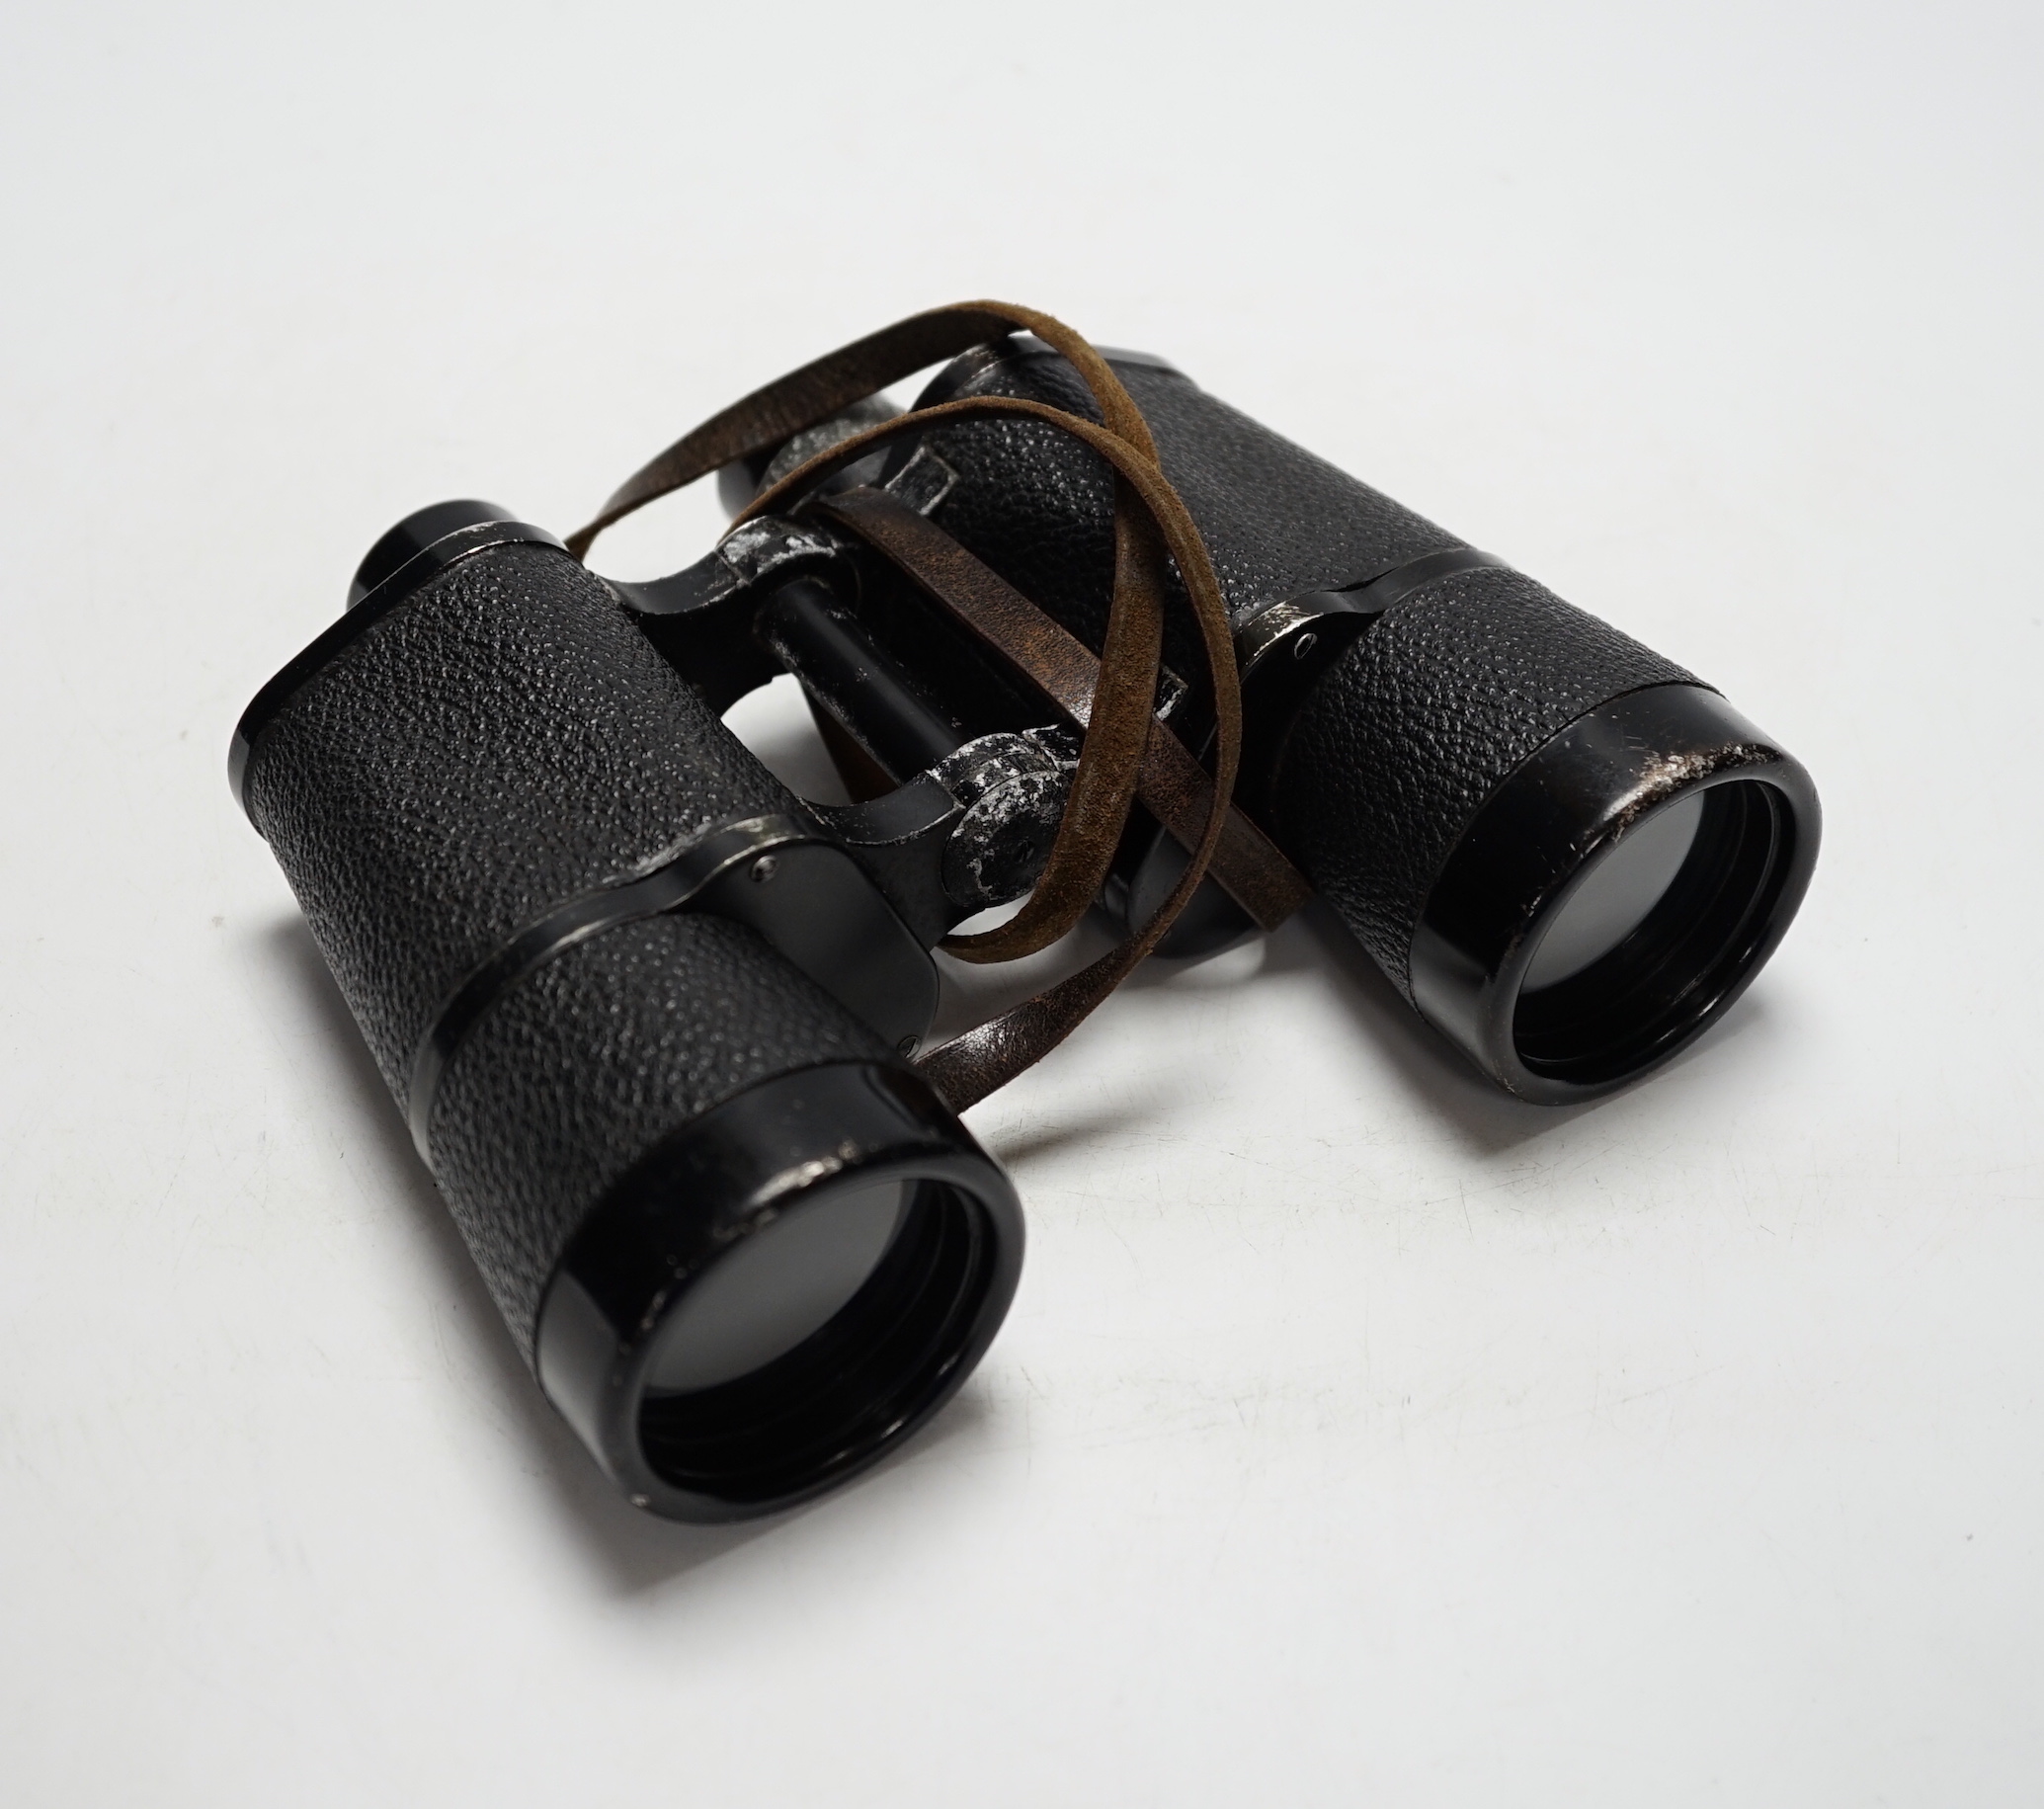 E. Leitz beh Dienstglas field binoculars, 7 x 50, World War II period in original case